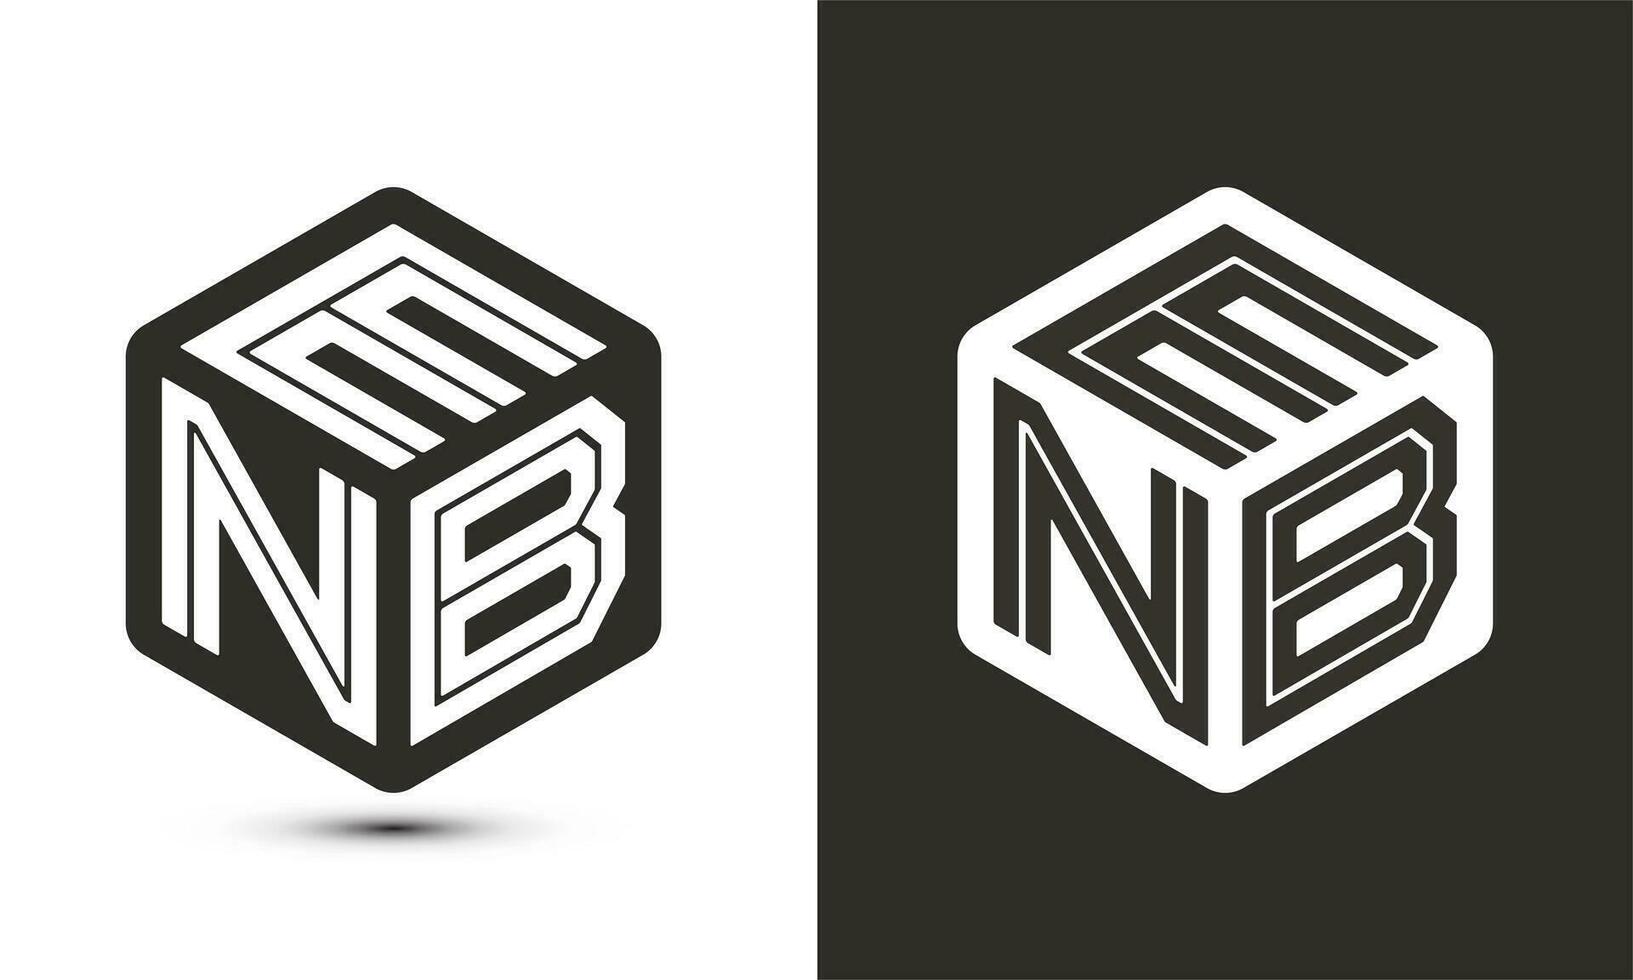 ENB letter logo design with illustrator cube logo, vector logo modern alphabet font overlap style.